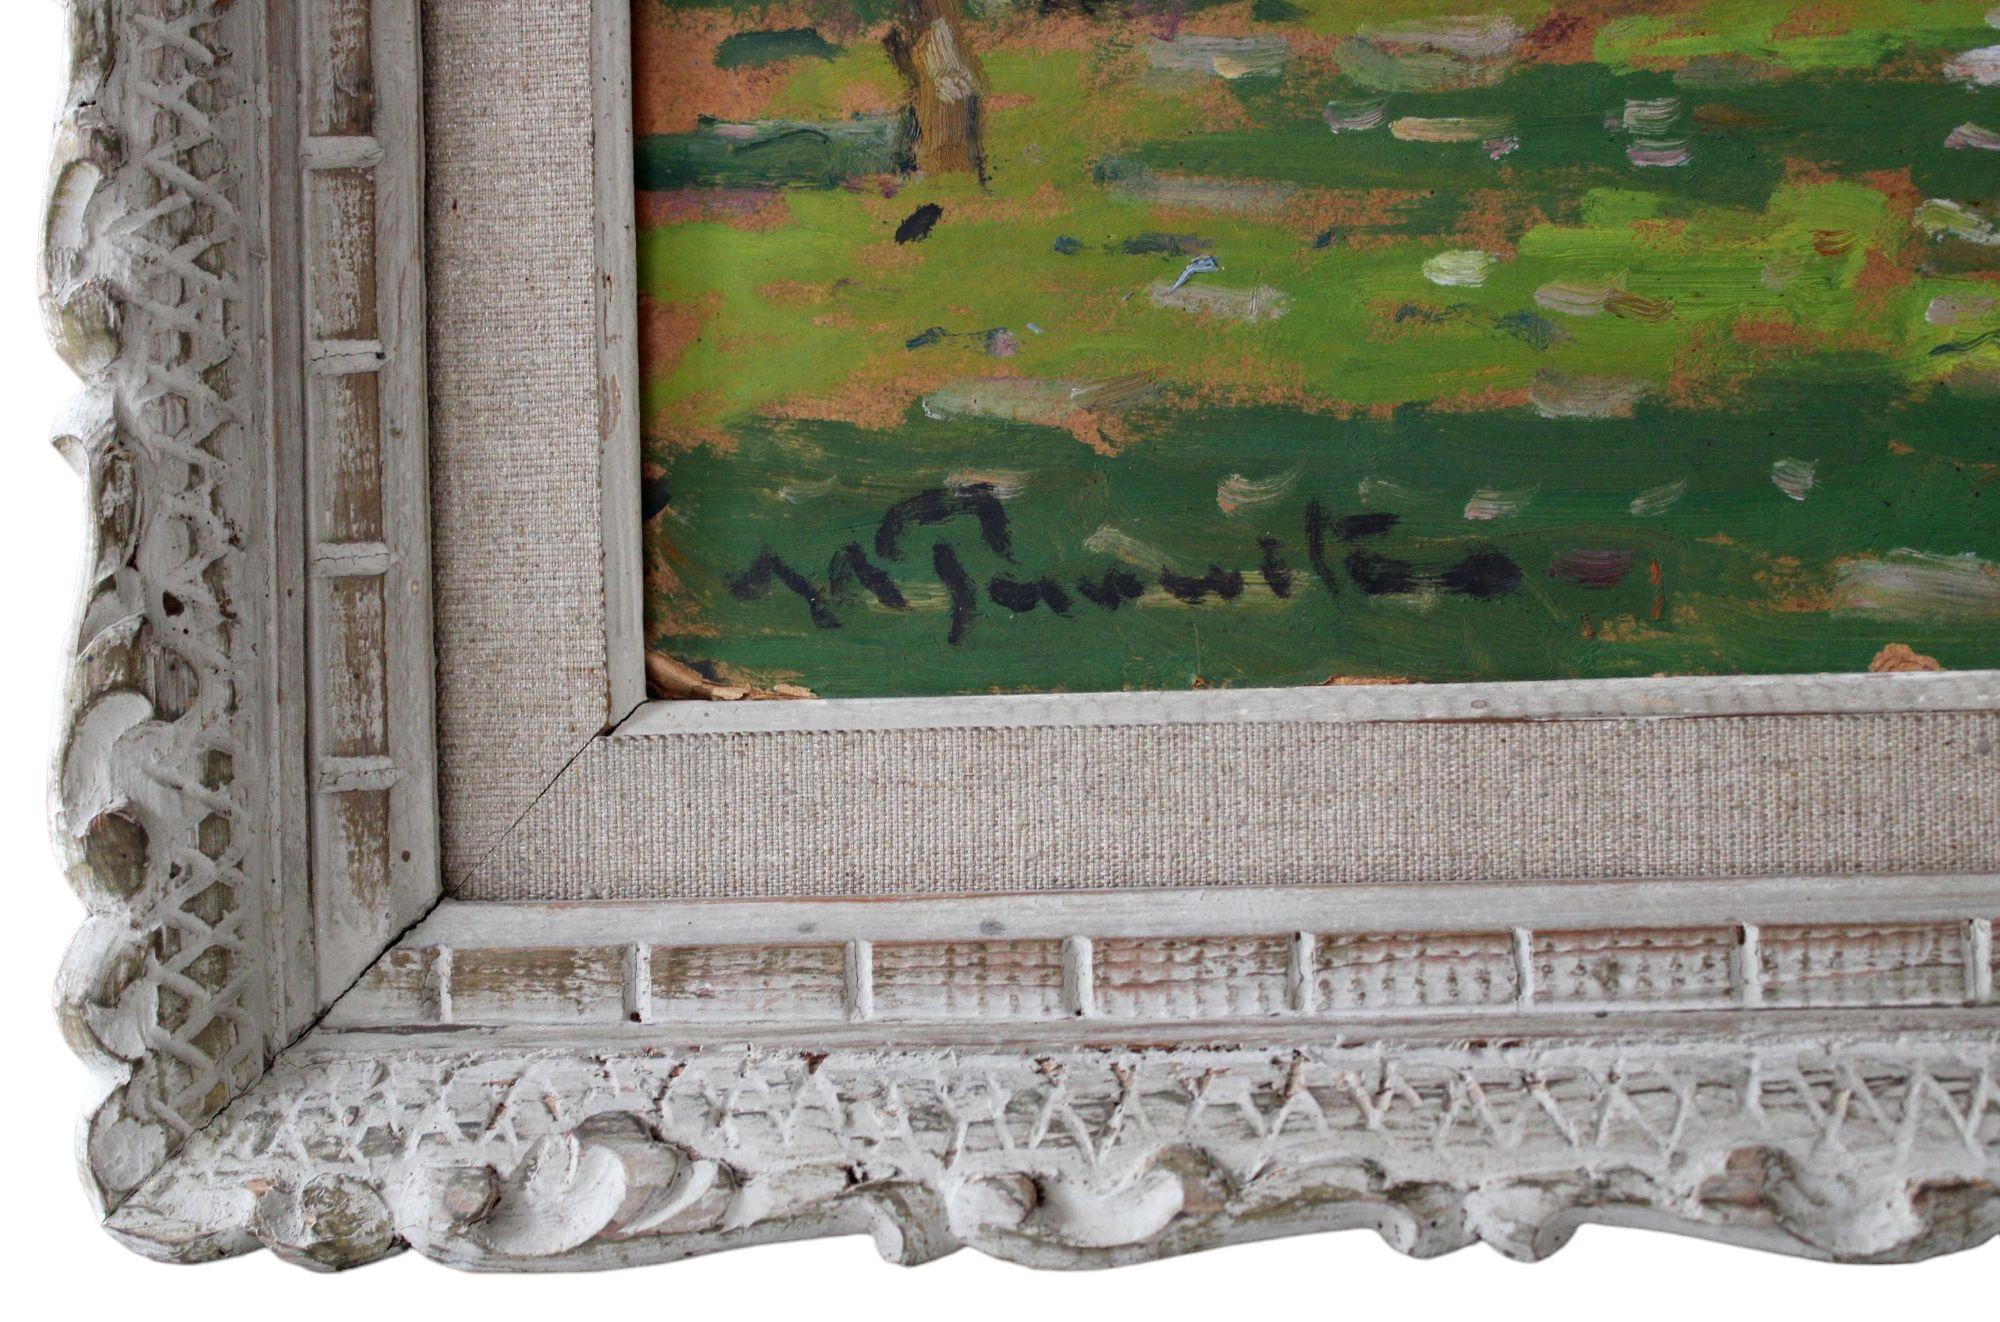 Blühende Apfelbäume. Cardboard, Öl, 51,5x72 cm, Pappe

Vilhelms Purvitis ist ein sehr berühmter und beliebter lettischer Landschaftsmaler, er ist Begründer der lettischen Schule für Landschaftsmalerei, gründete die lettische Kunstakademie und war